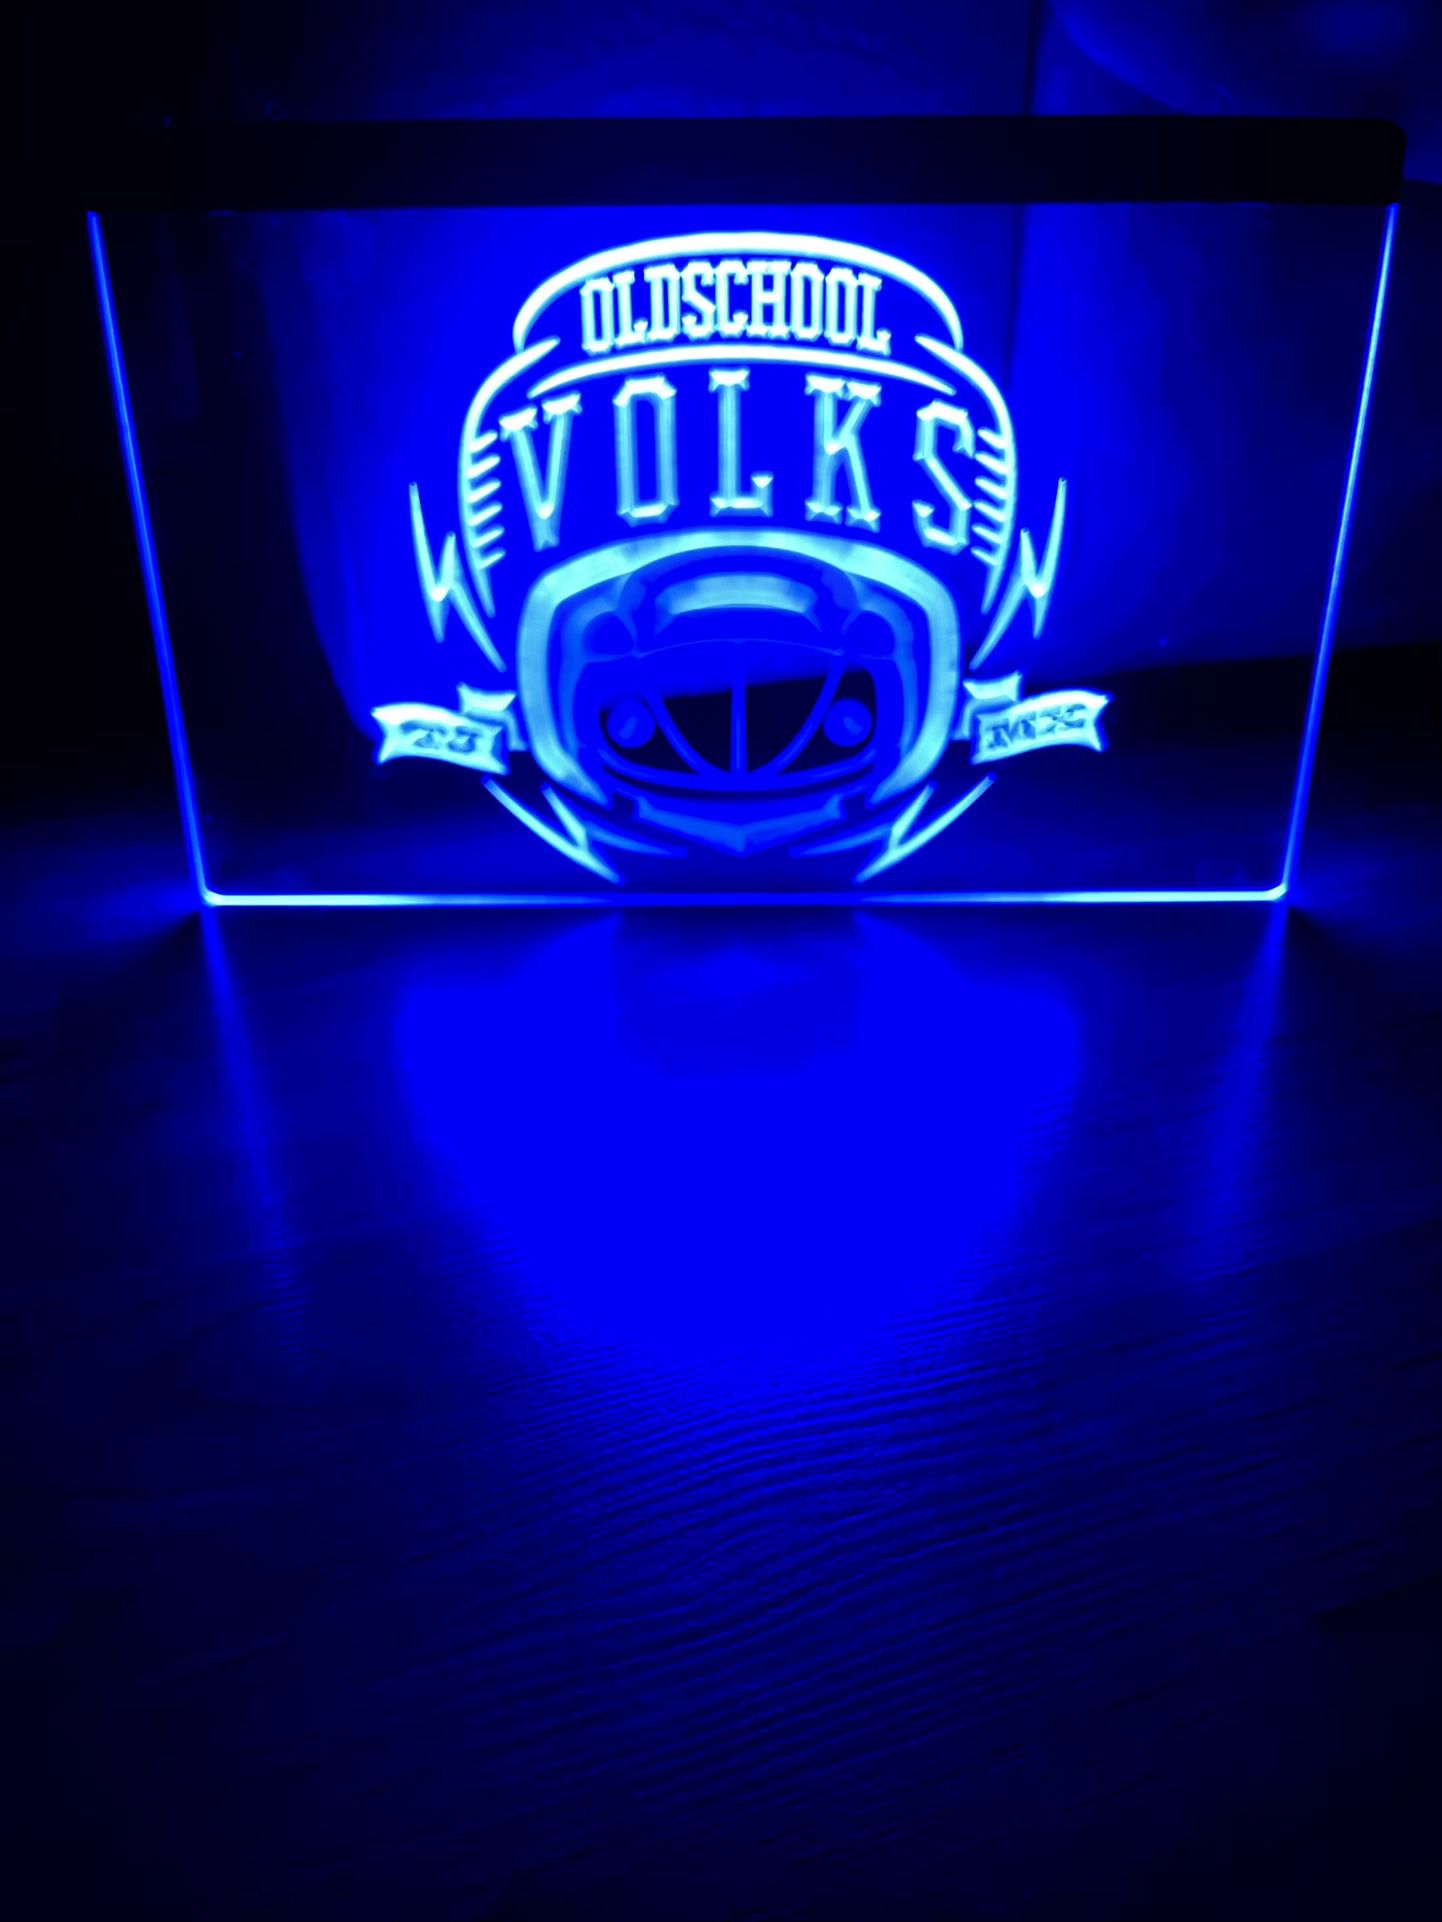 VOLKSWAGEN VW LED NEON BLUE LIGHT SIGN 8x12